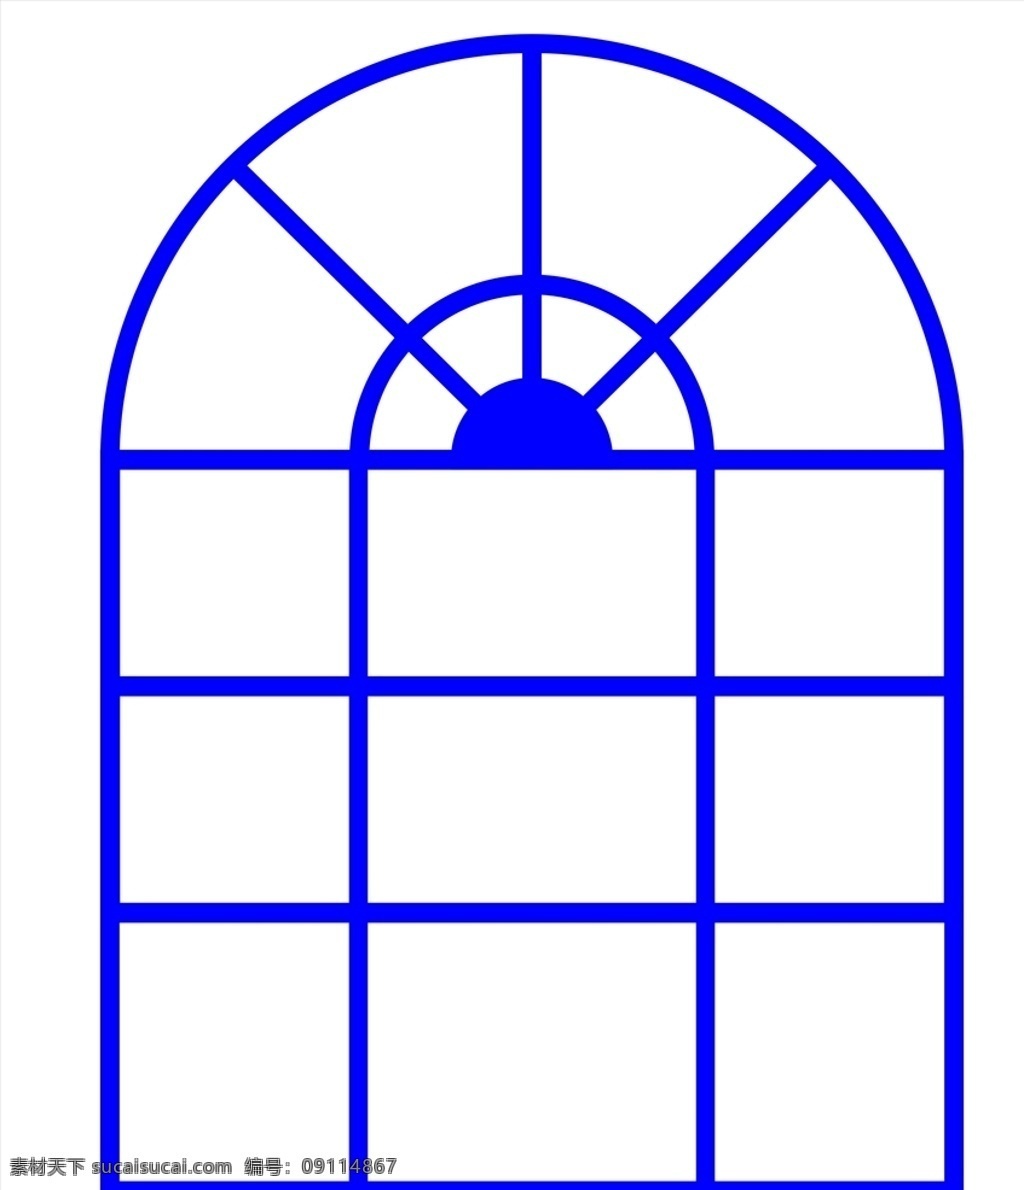 窗户镂空雕花 镂空 雕花 窗户 扇形窗子 刻镂 移门图案